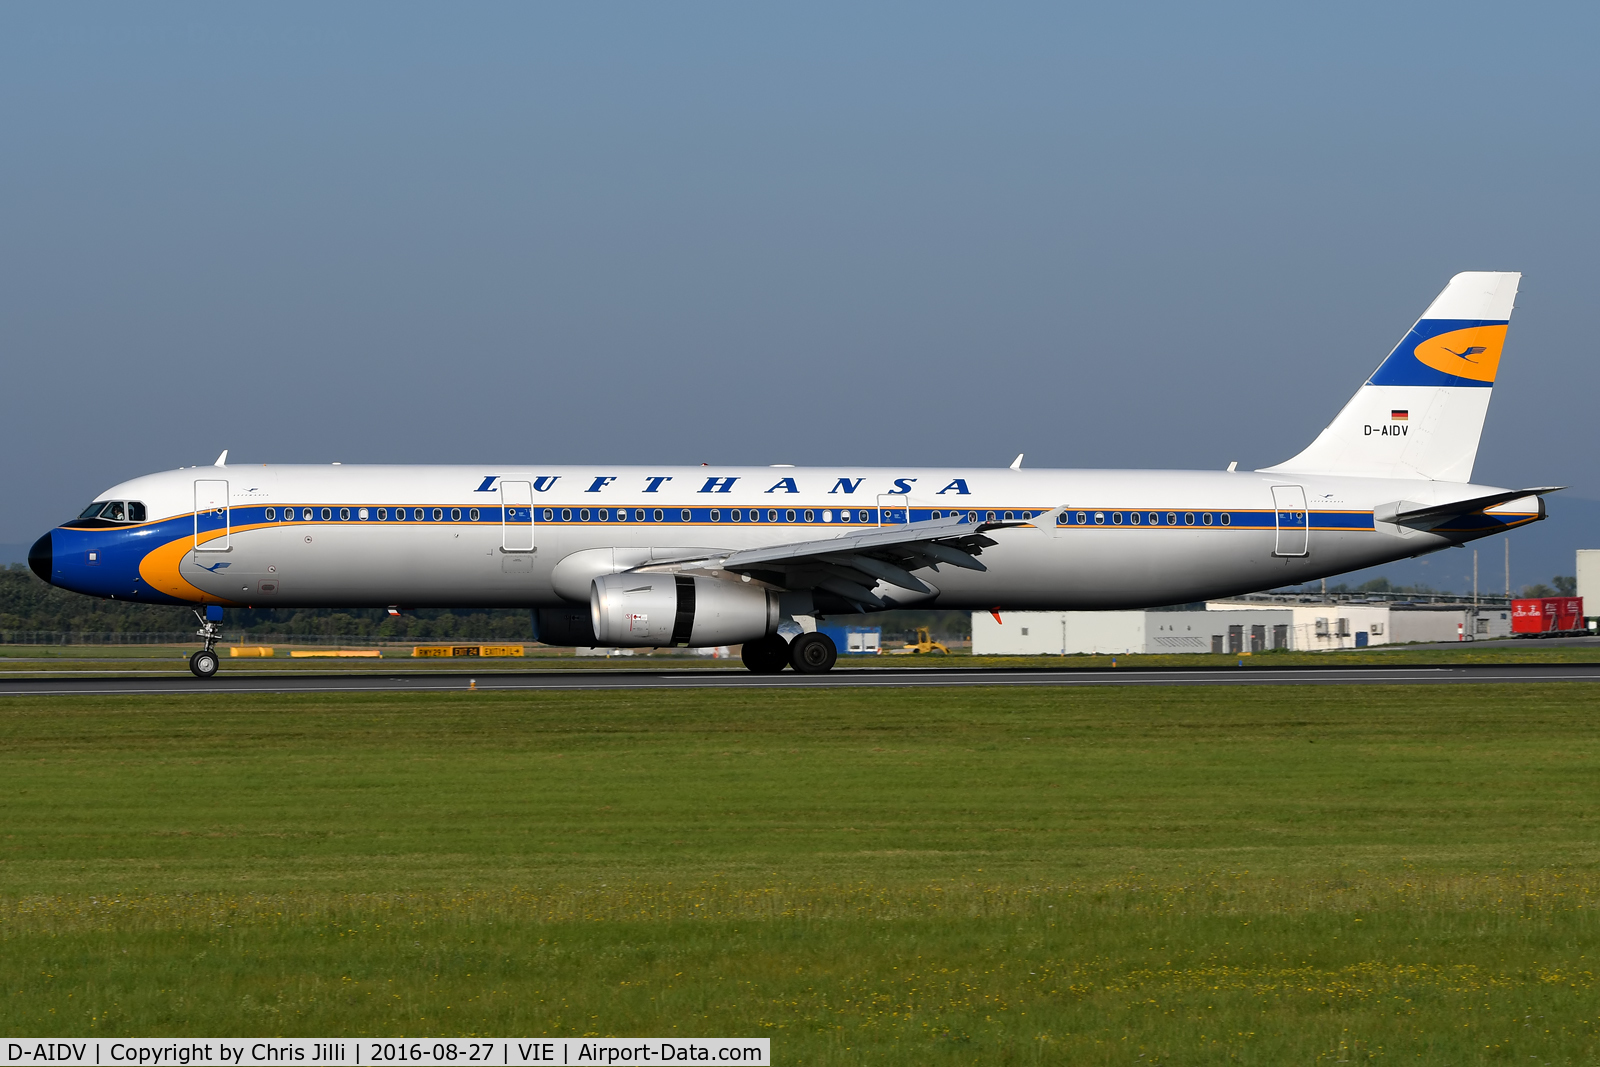 D-AIDV, 2012 Airbus A321-231 C/N 5413, Lufthansa